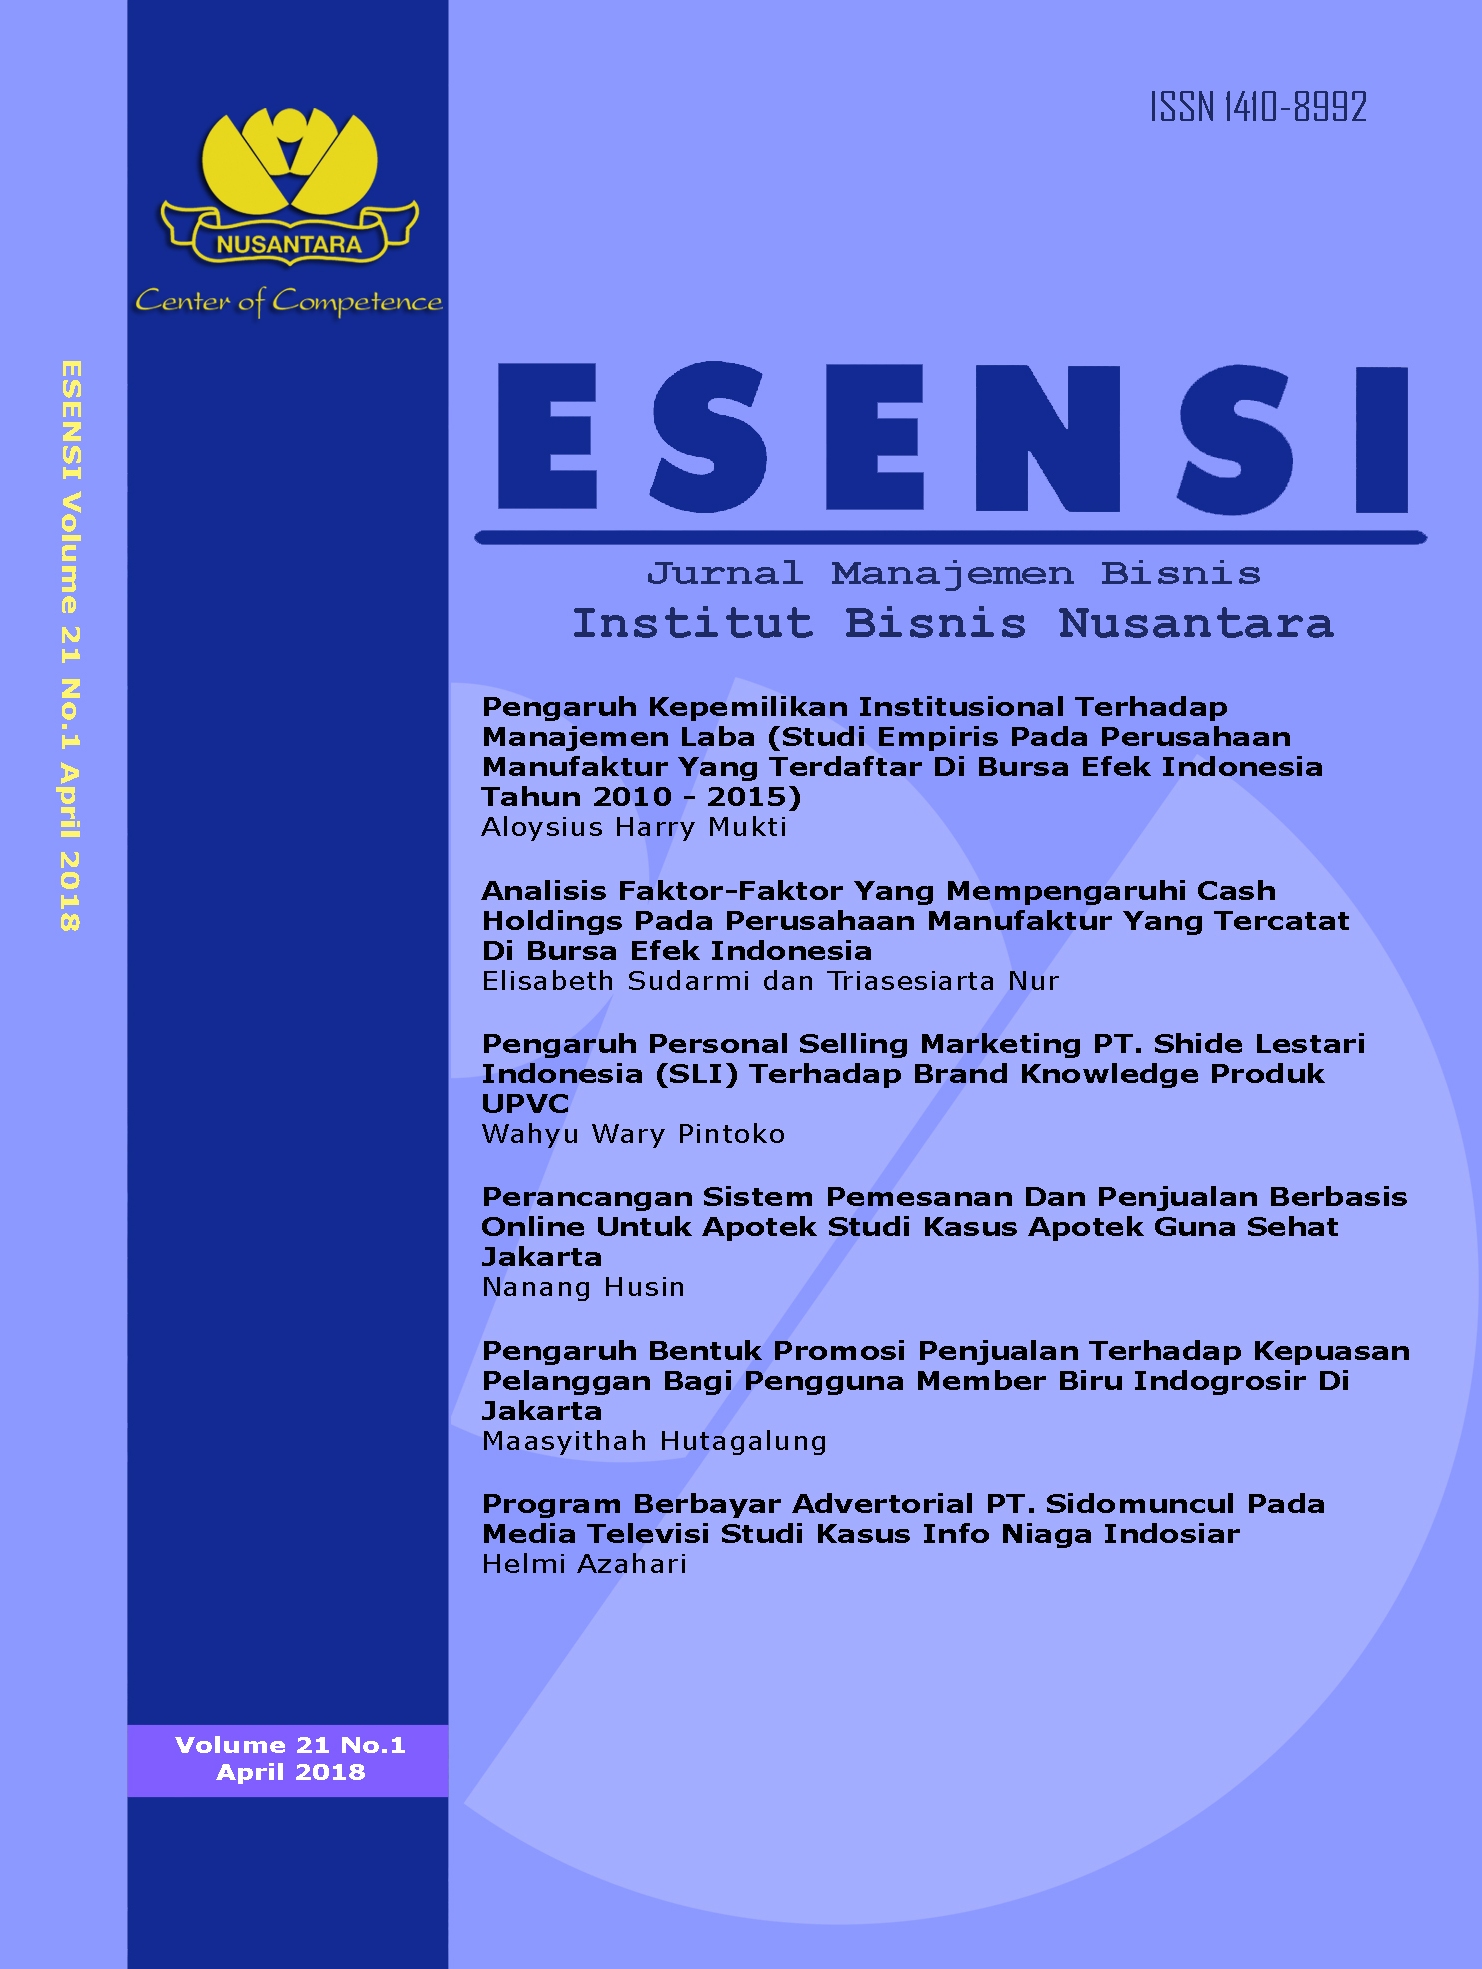 Cover Esensi Vol.21 No.1 April 2018